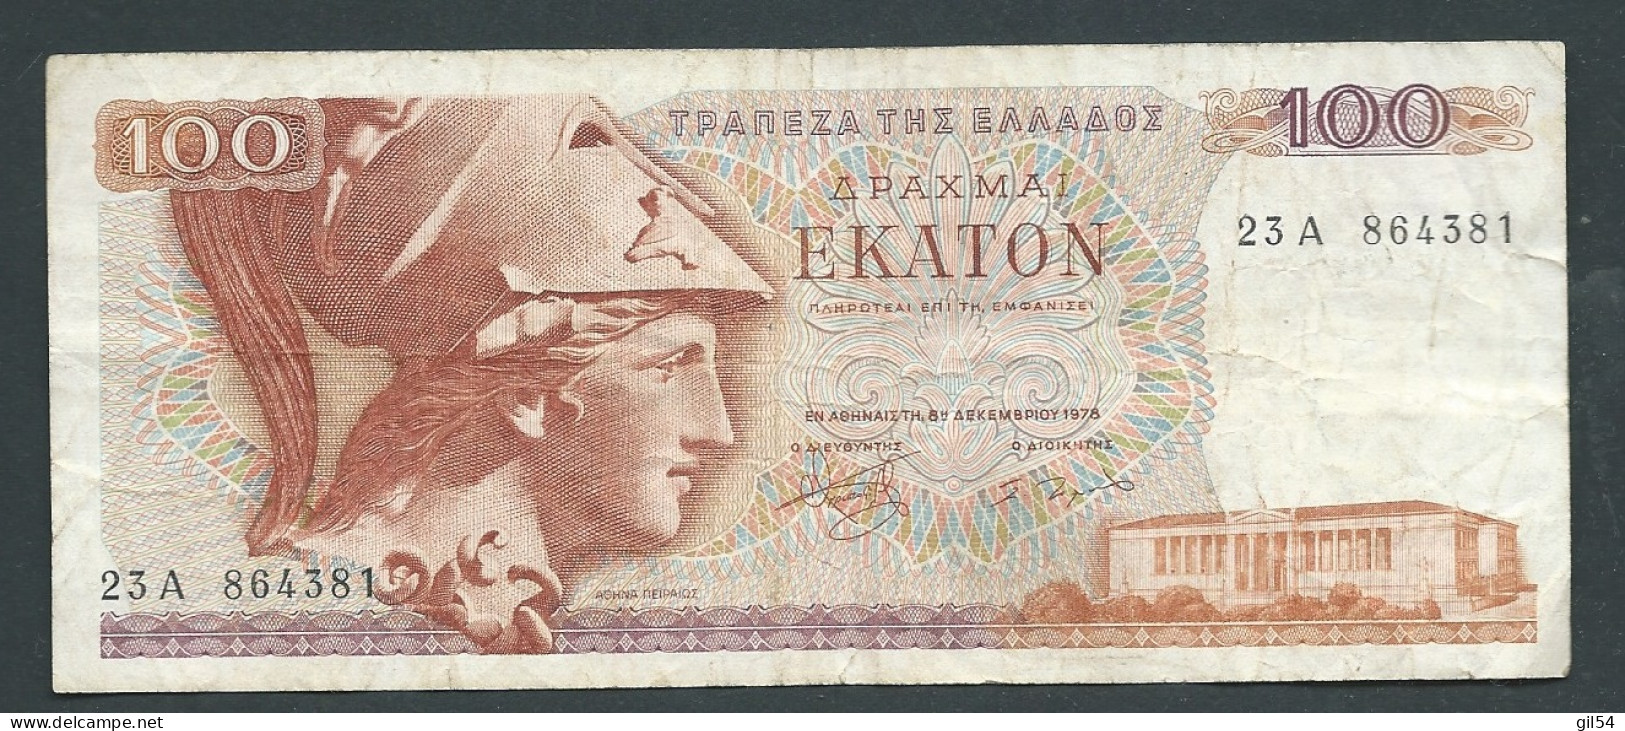 Grèce - Billet De 100 Drachmes 1978   -   23A864381-  Laura 10205 - Greece